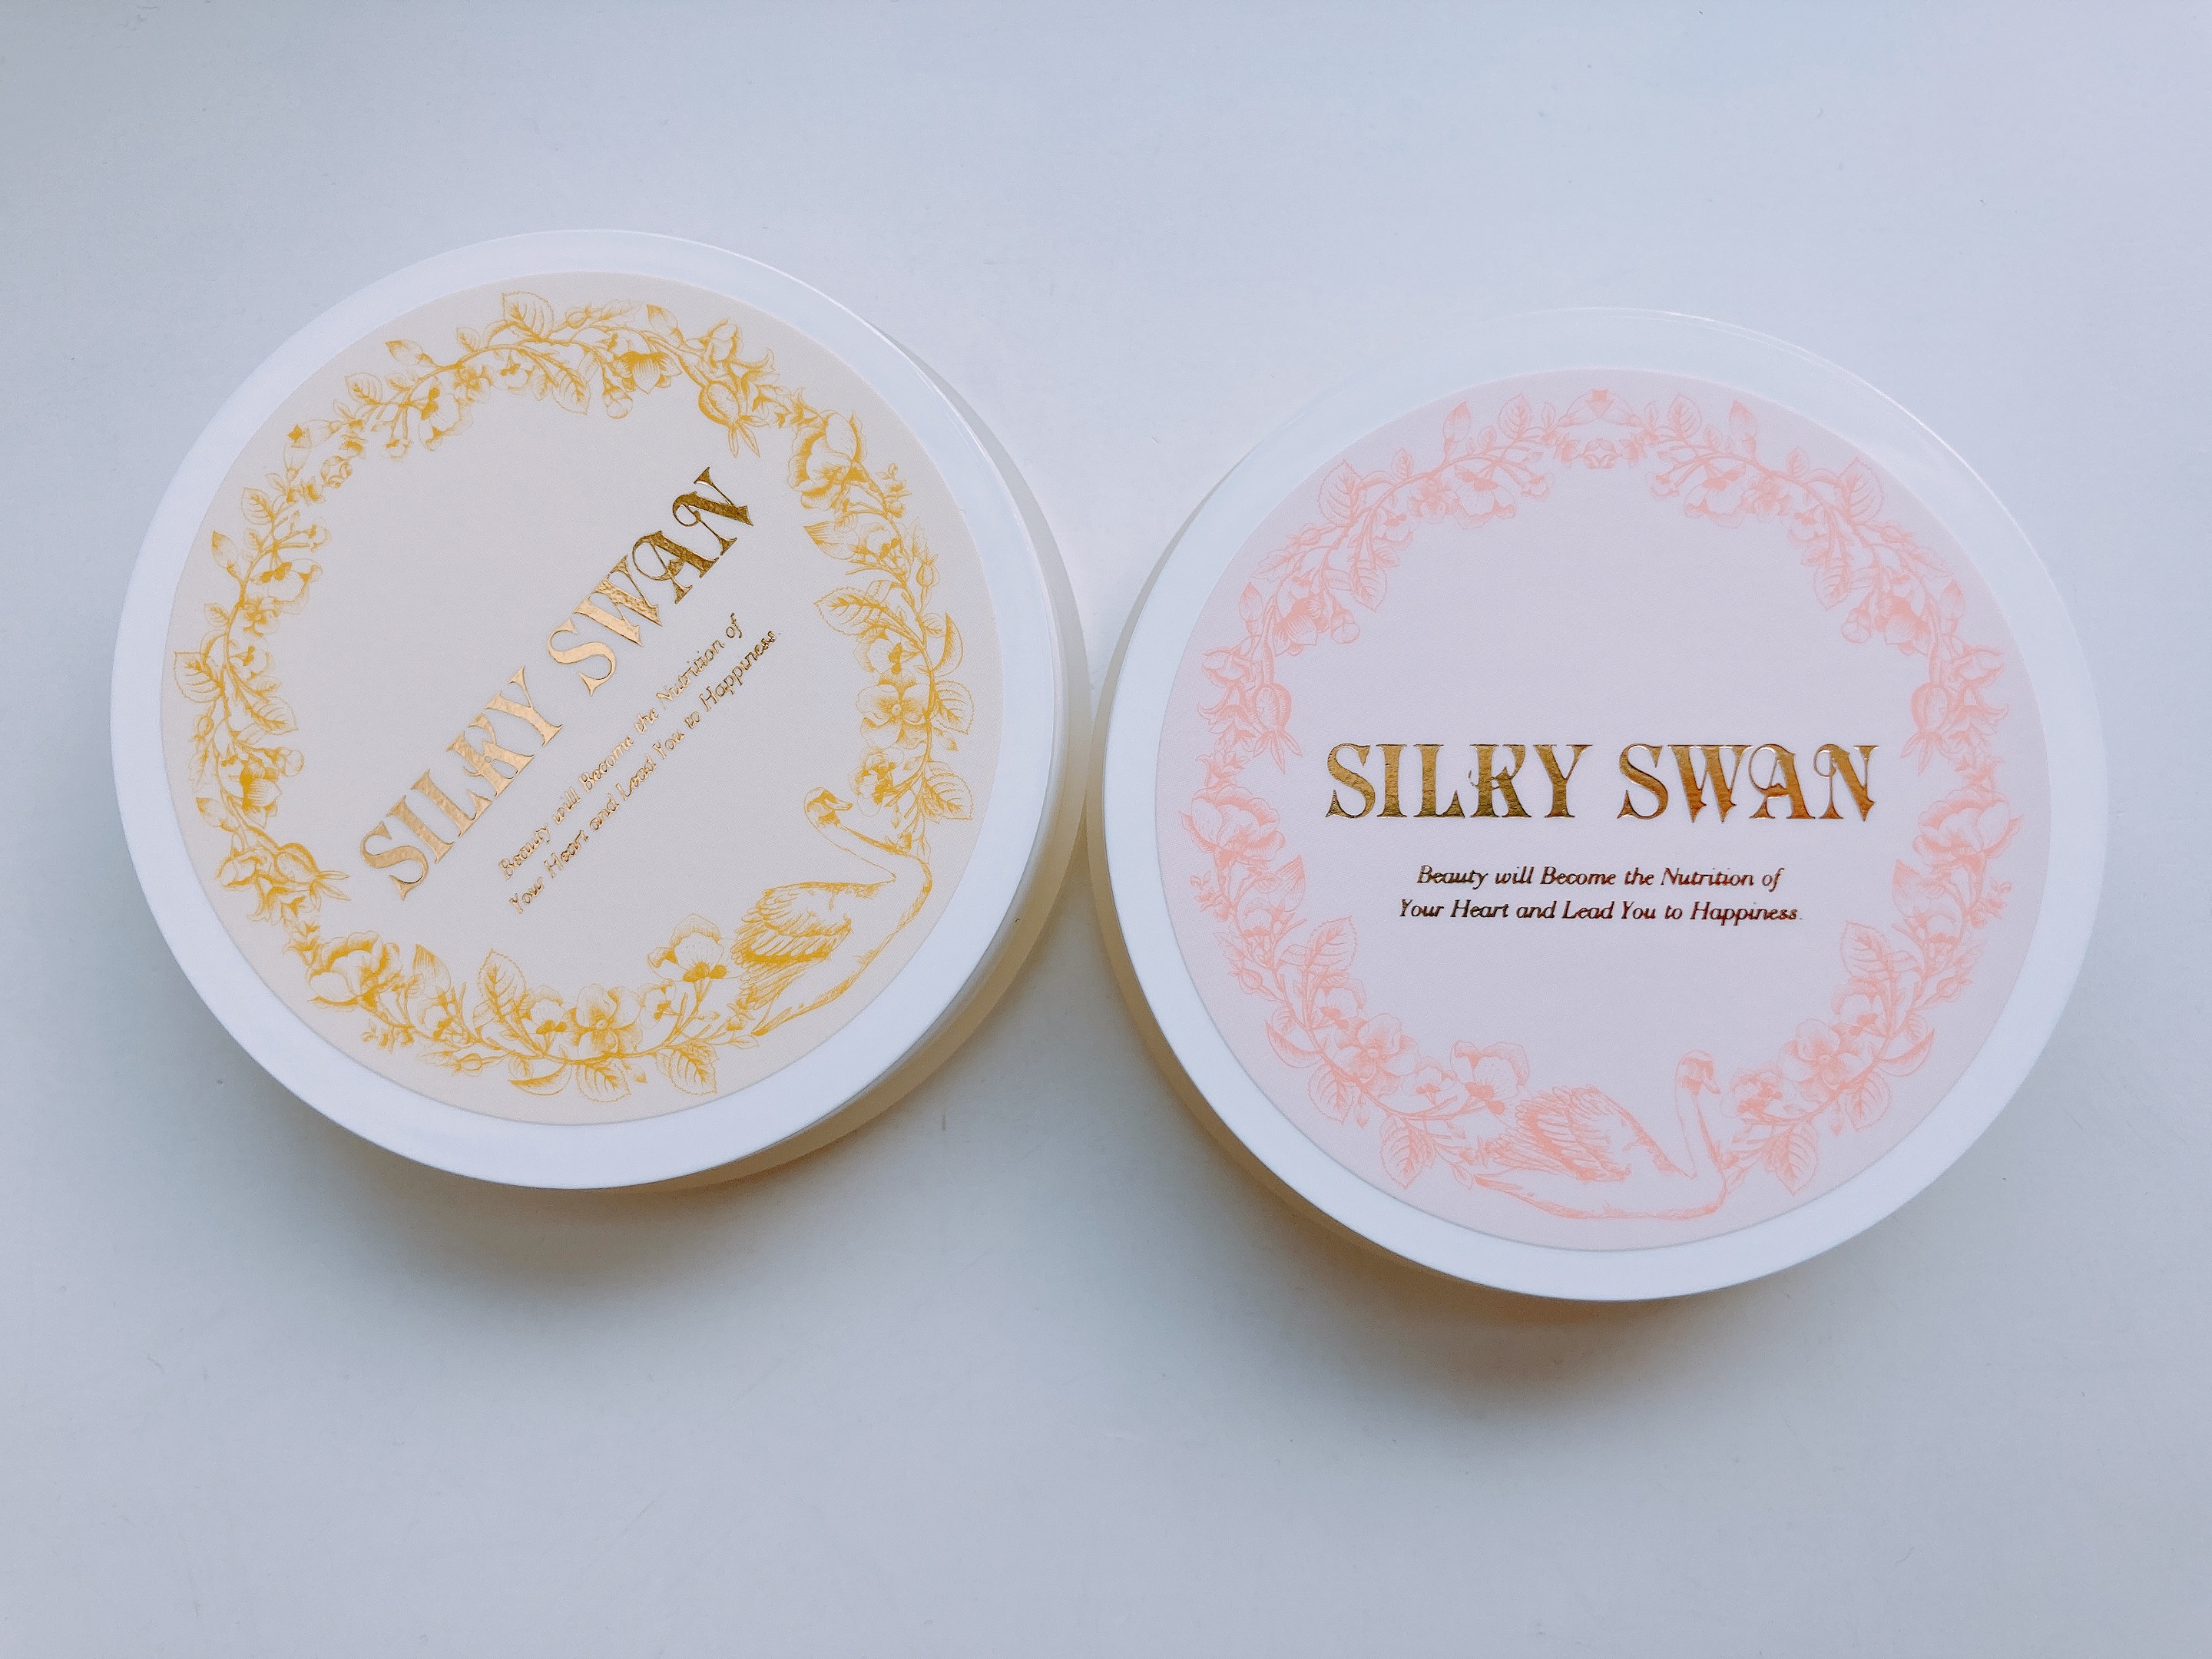 ホコニコ / Silky Swanの公式商品情報｜美容・化粧品情報はアットコスメ